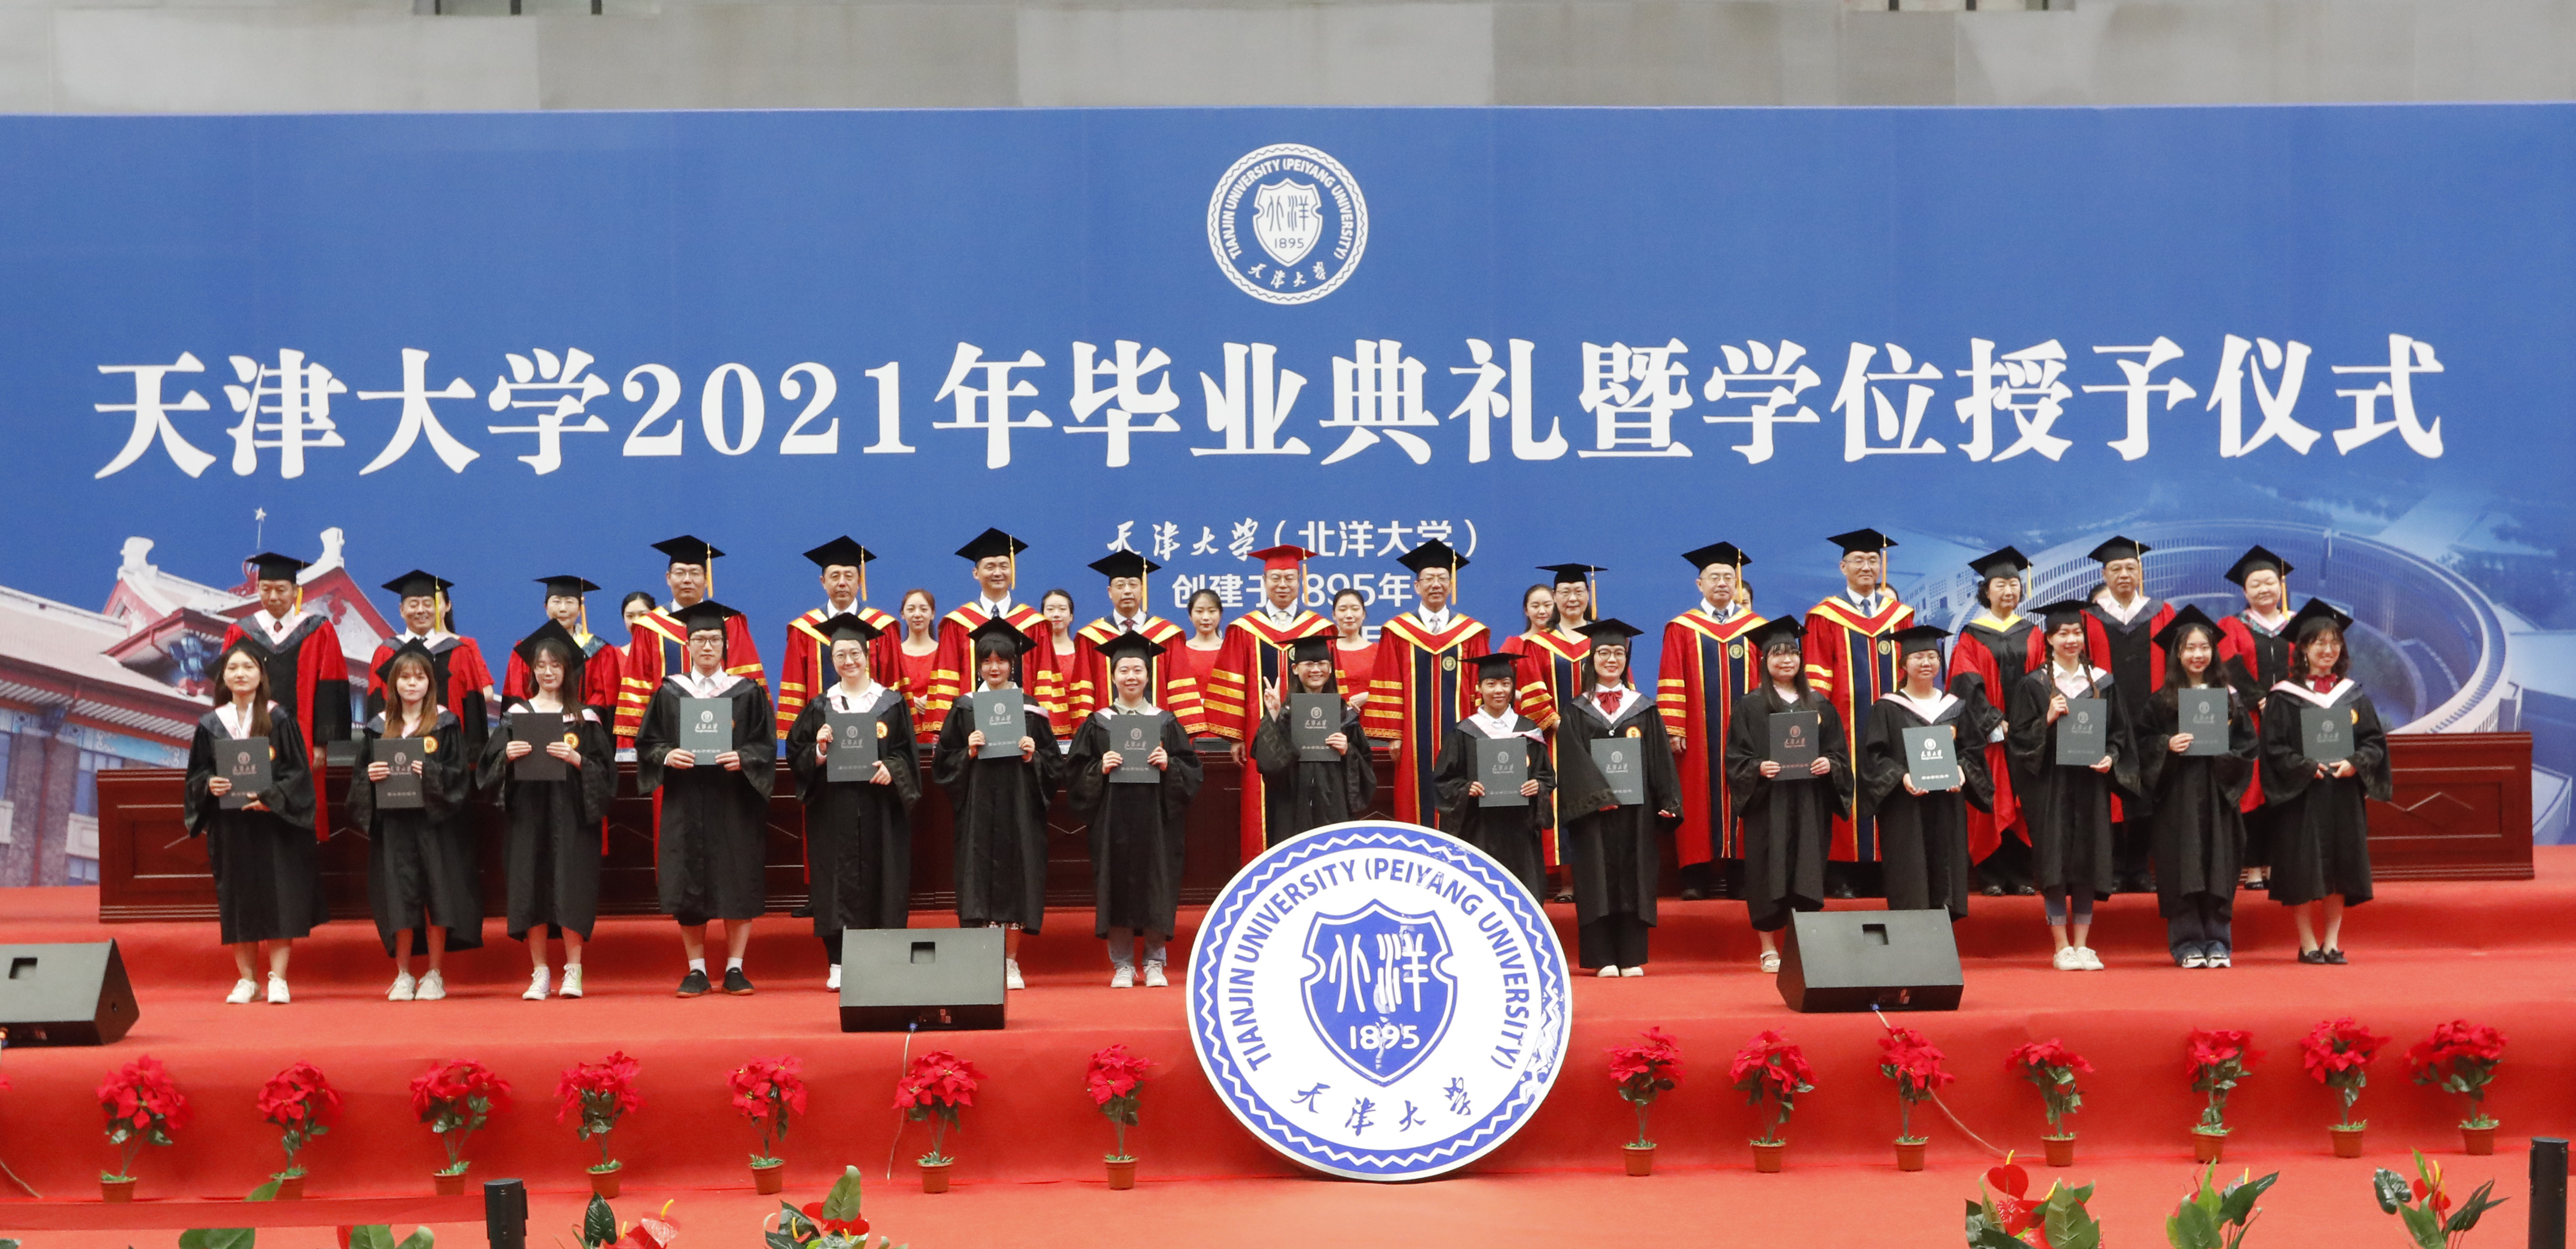 【2021毕业季】天津大学2021届本科生毕业典礼暨学位授予仪式举行